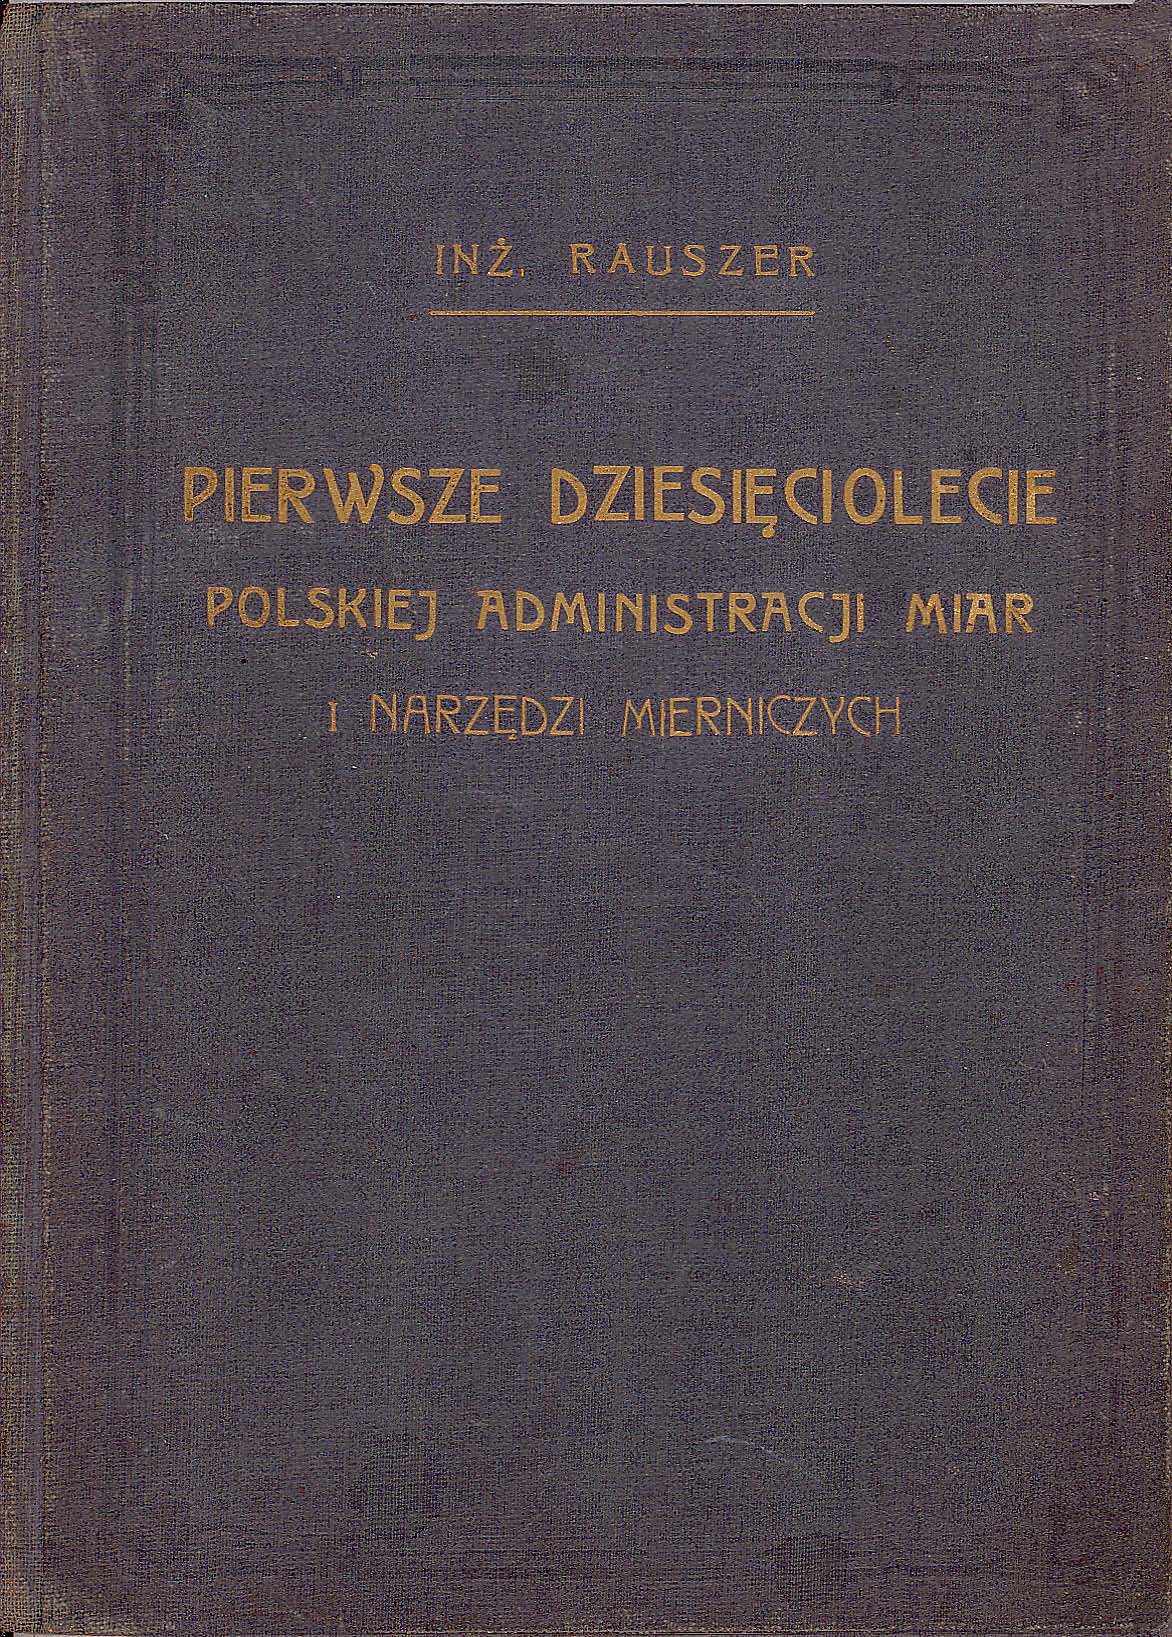 Okładka publikacji Pierwsze dziesięciolecie Polskiej Administracji Miar i Narzędzi Mierniczych. Na szarym tle złote litery.